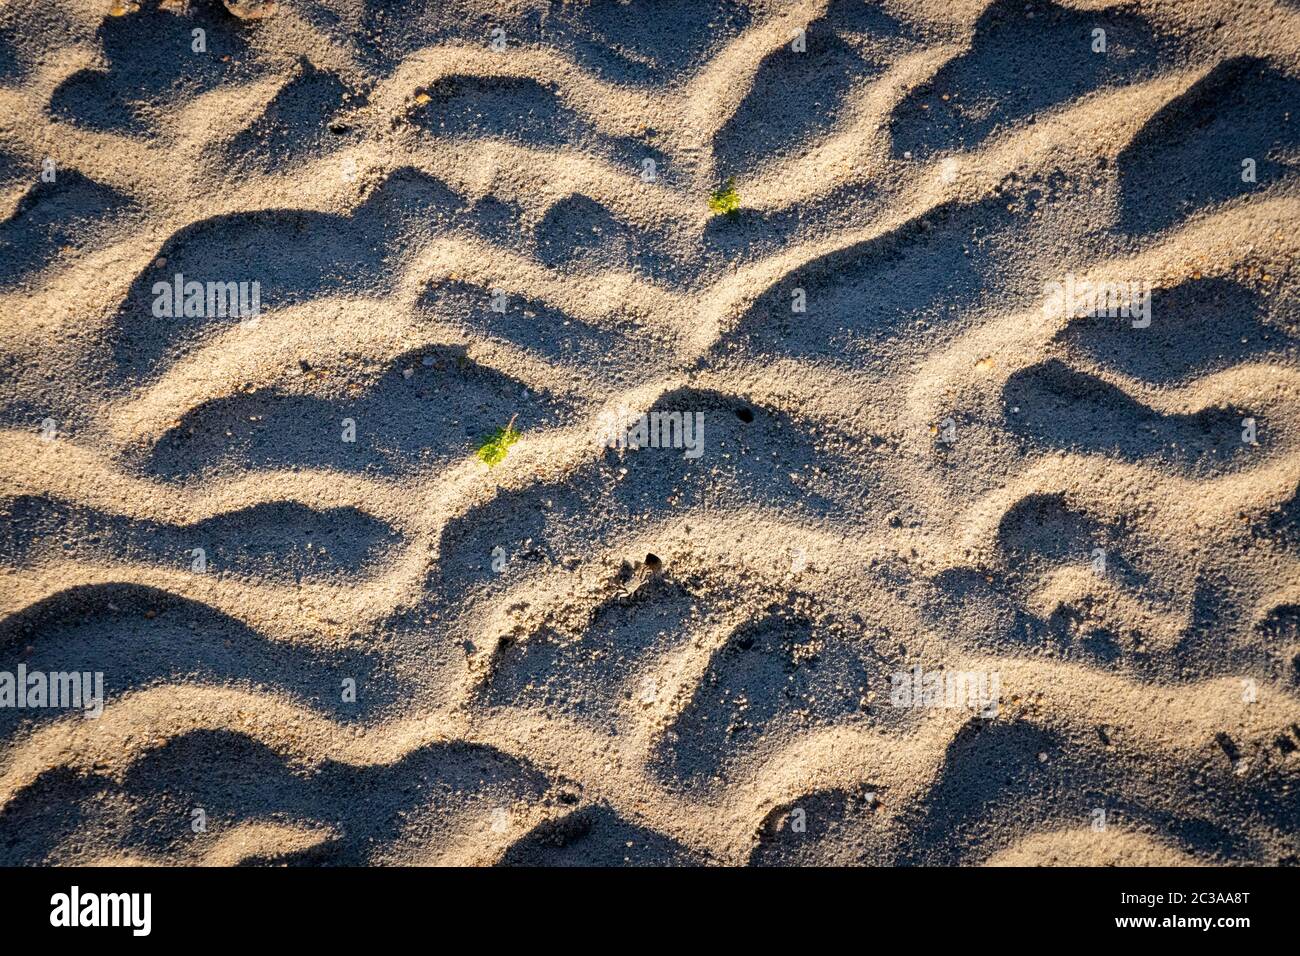 Nahaufnahme der gewellten Sandmuster am Strand, beleuchtet von Sonnenlicht mit starken Schatten und mit einem kleinen grünen Blatt, das oben liegt Stockfoto